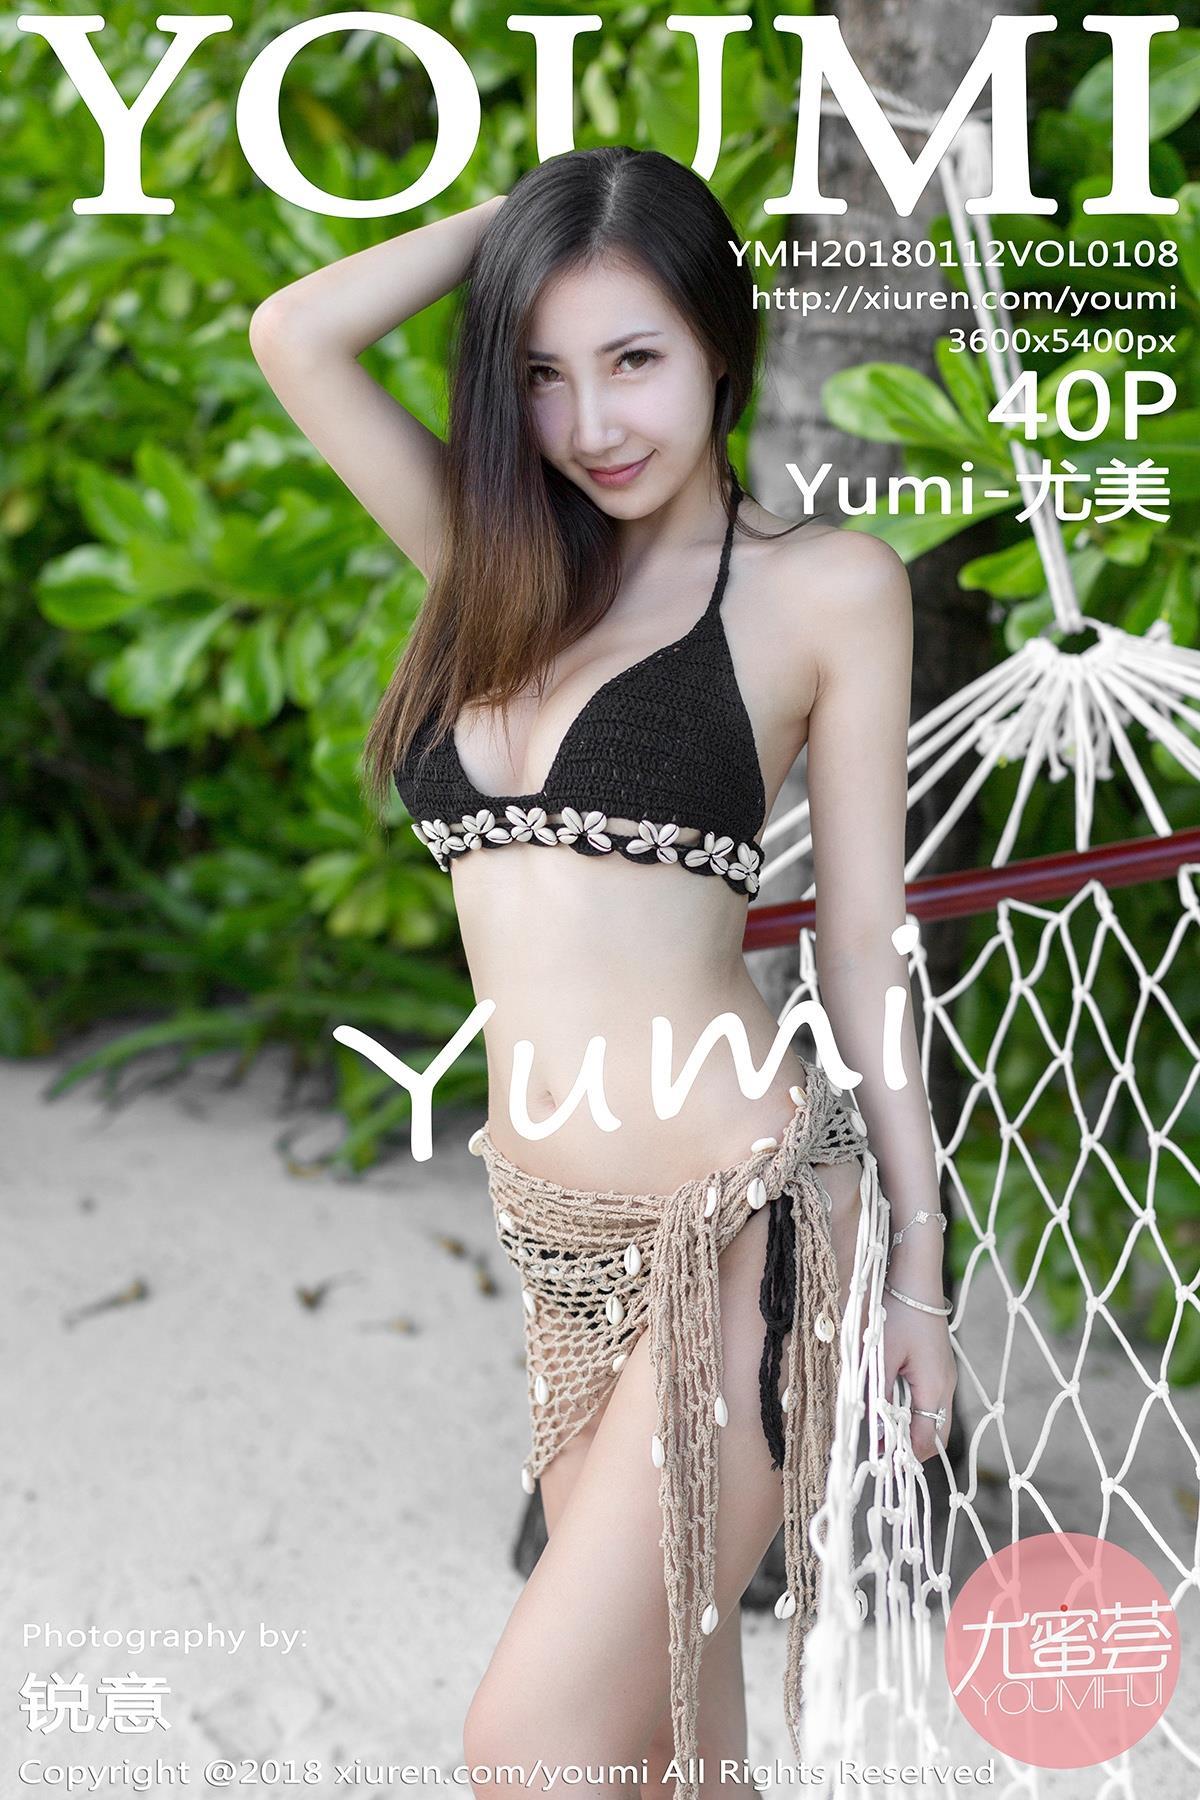 [YOUMI尤蜜荟]YMH20180112VOL0108 Yumi-尤美 比基尼泳装与性感情趣内衣及白色紧身长裤私房写真集,